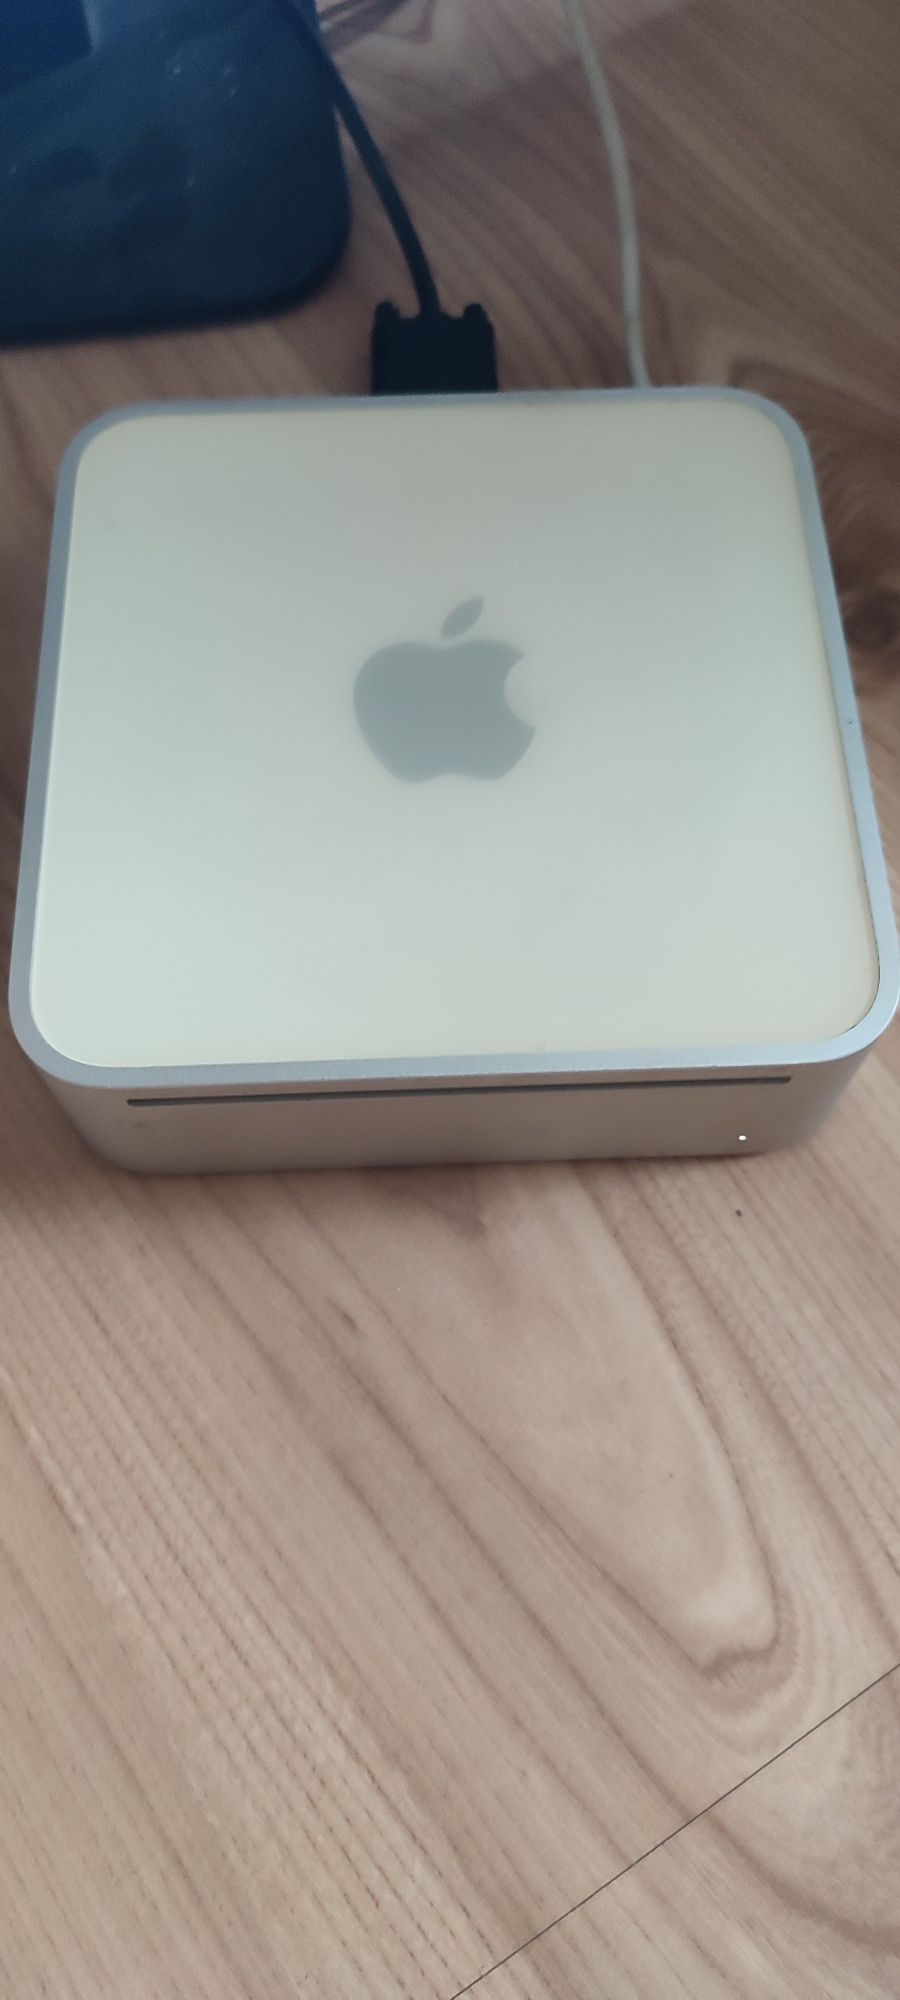 Apple Mac Mini A1103 2005 1GB RAM